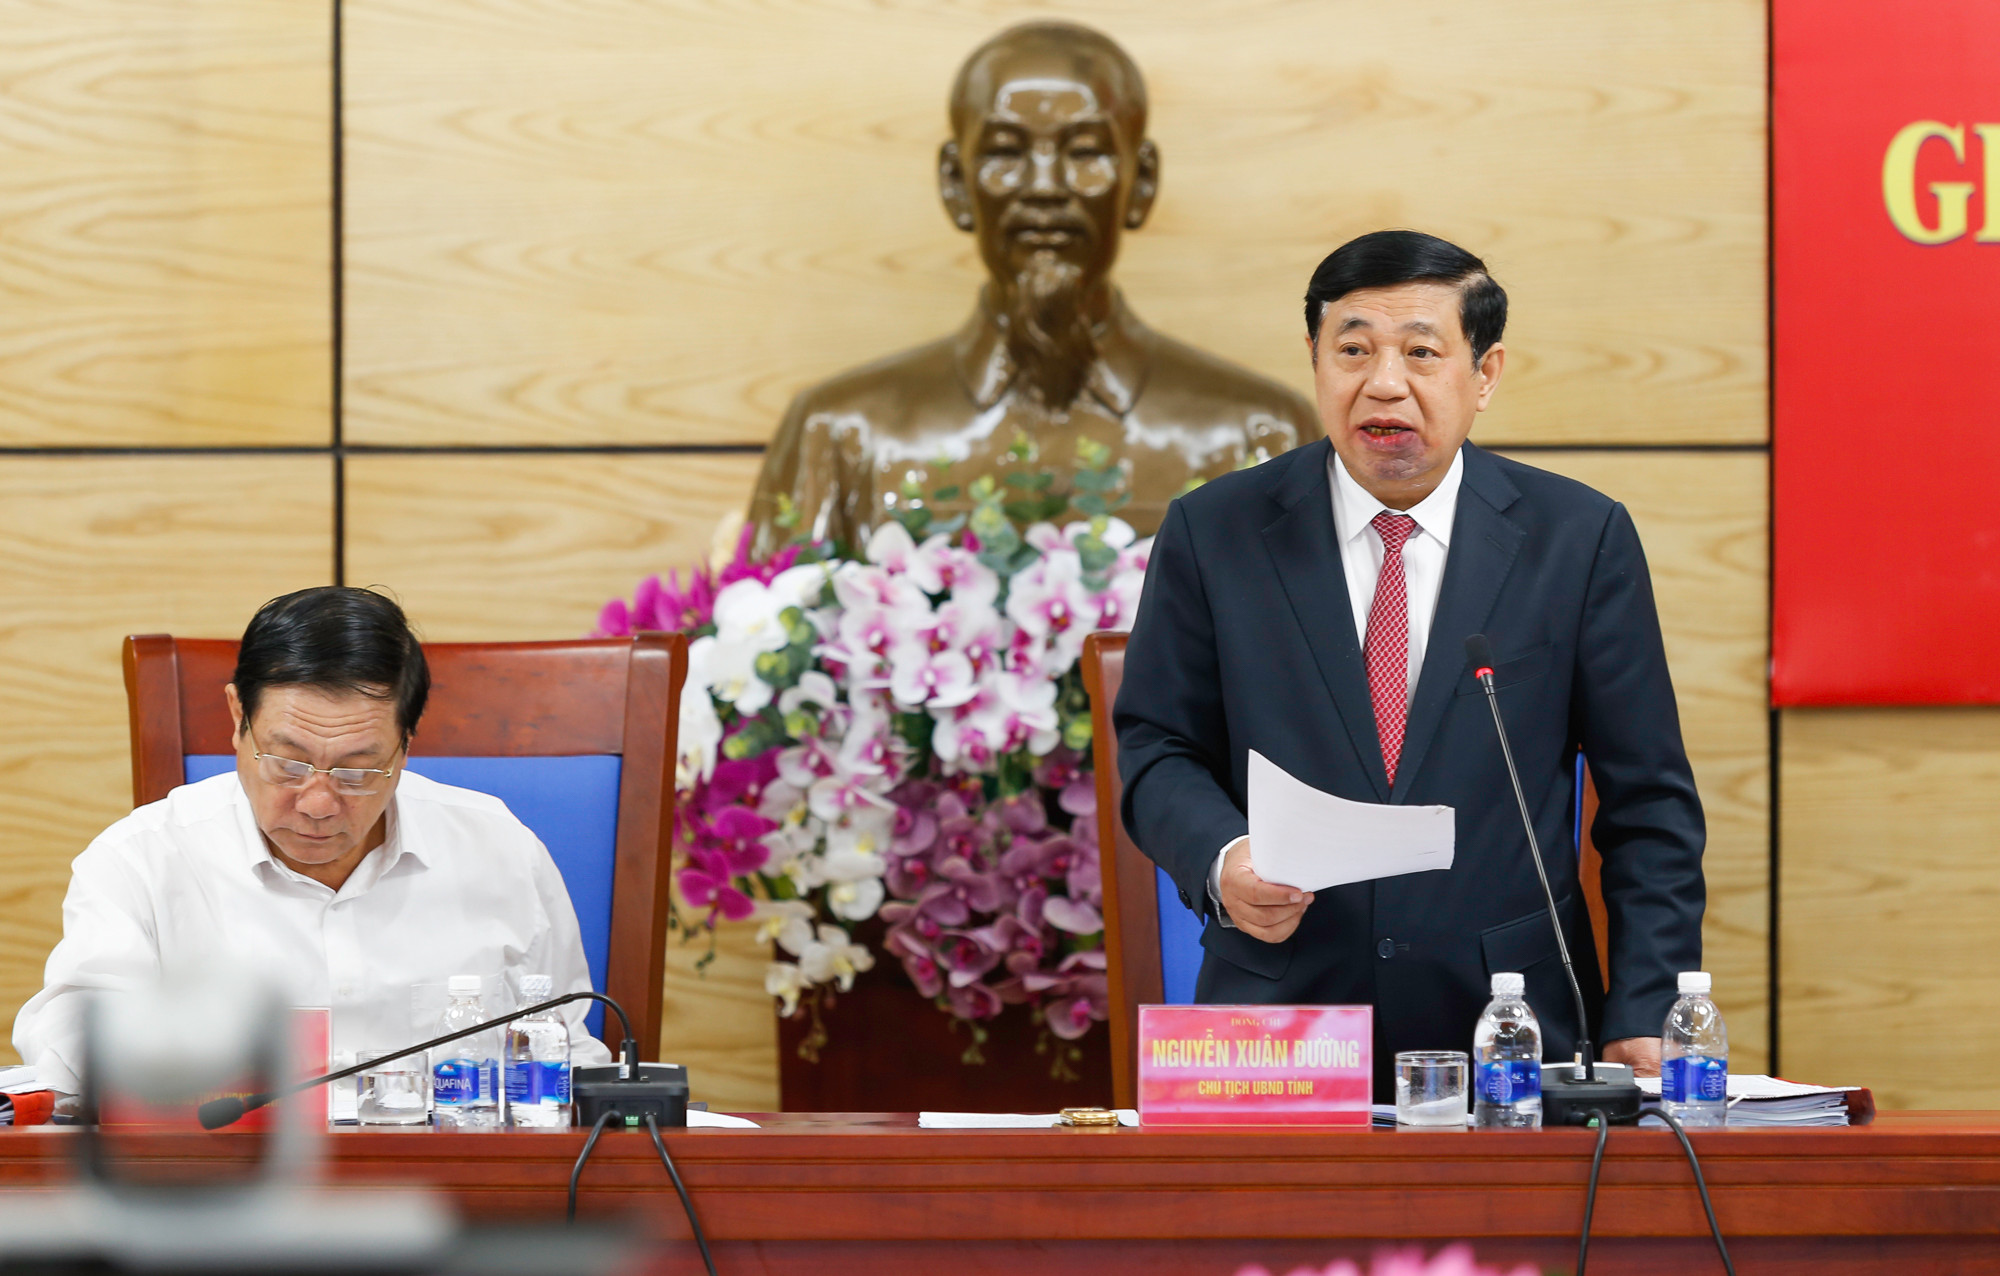 Chủ tịch UBND tỉnh Nguyễn Xuân Đường phát biểu kết luận cuộc làm việc. Ảnh: Đức Anh